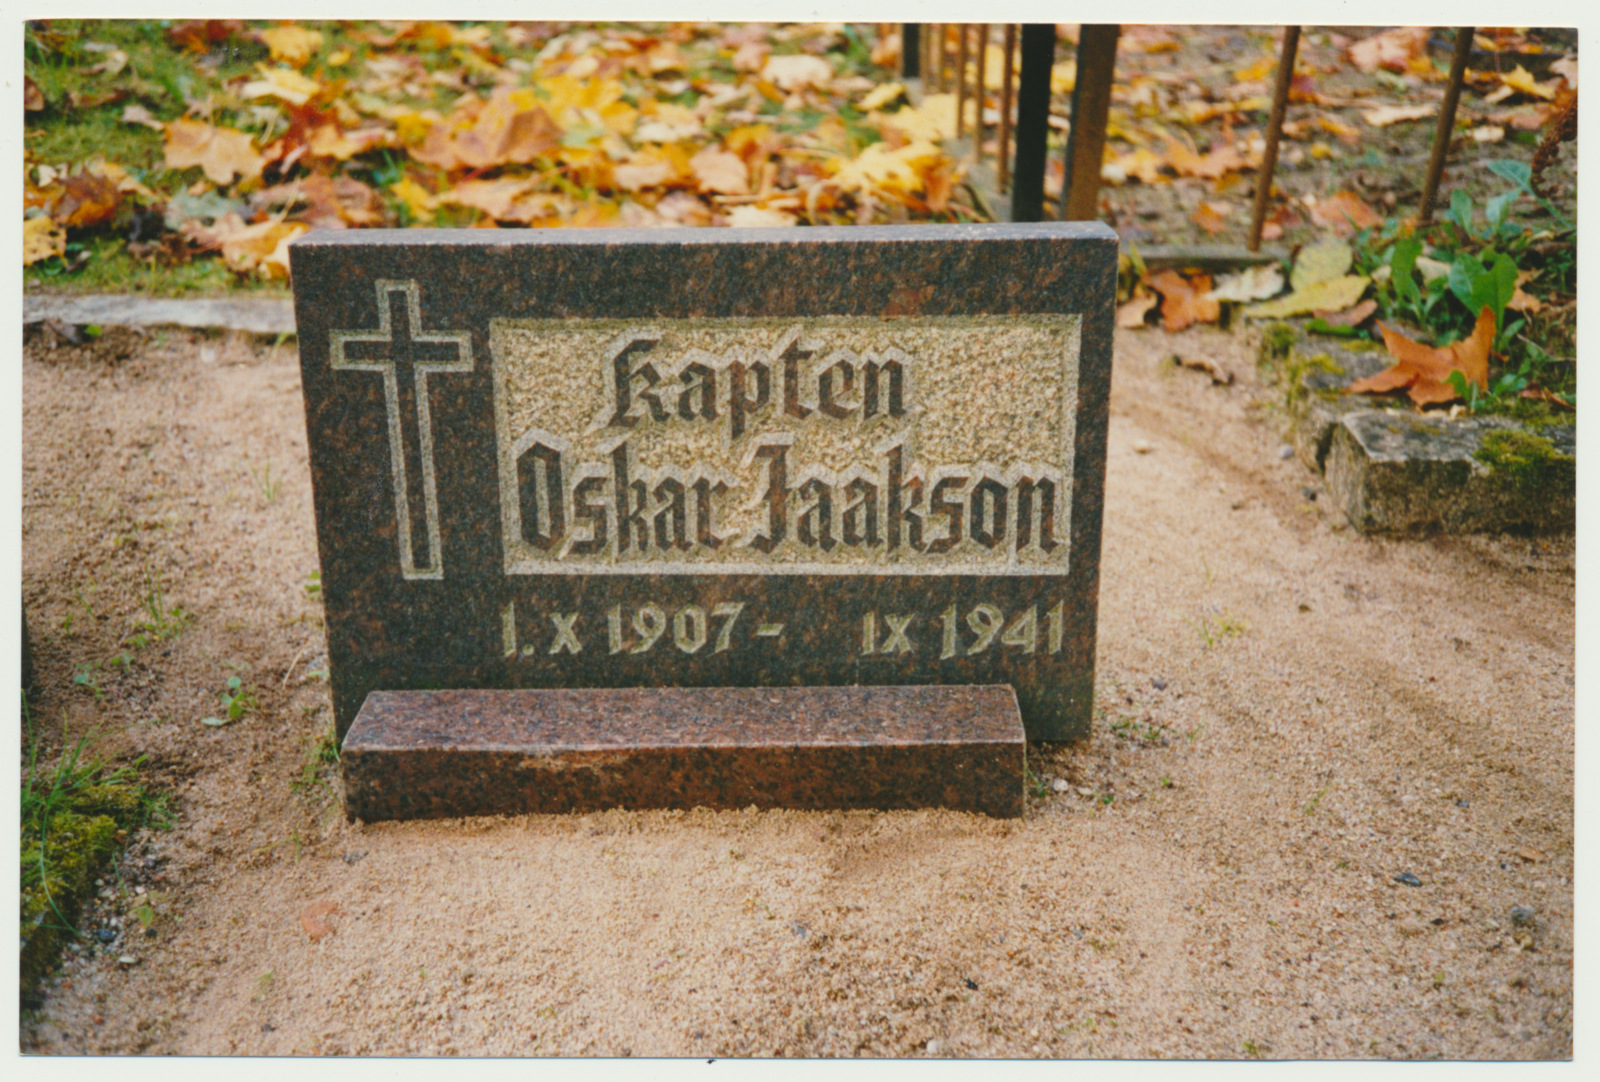 foto, Viljandi, Vana kalmistu, hauaplaat Oskar Jaakson, 1993, foto J. Pihlak, värviline